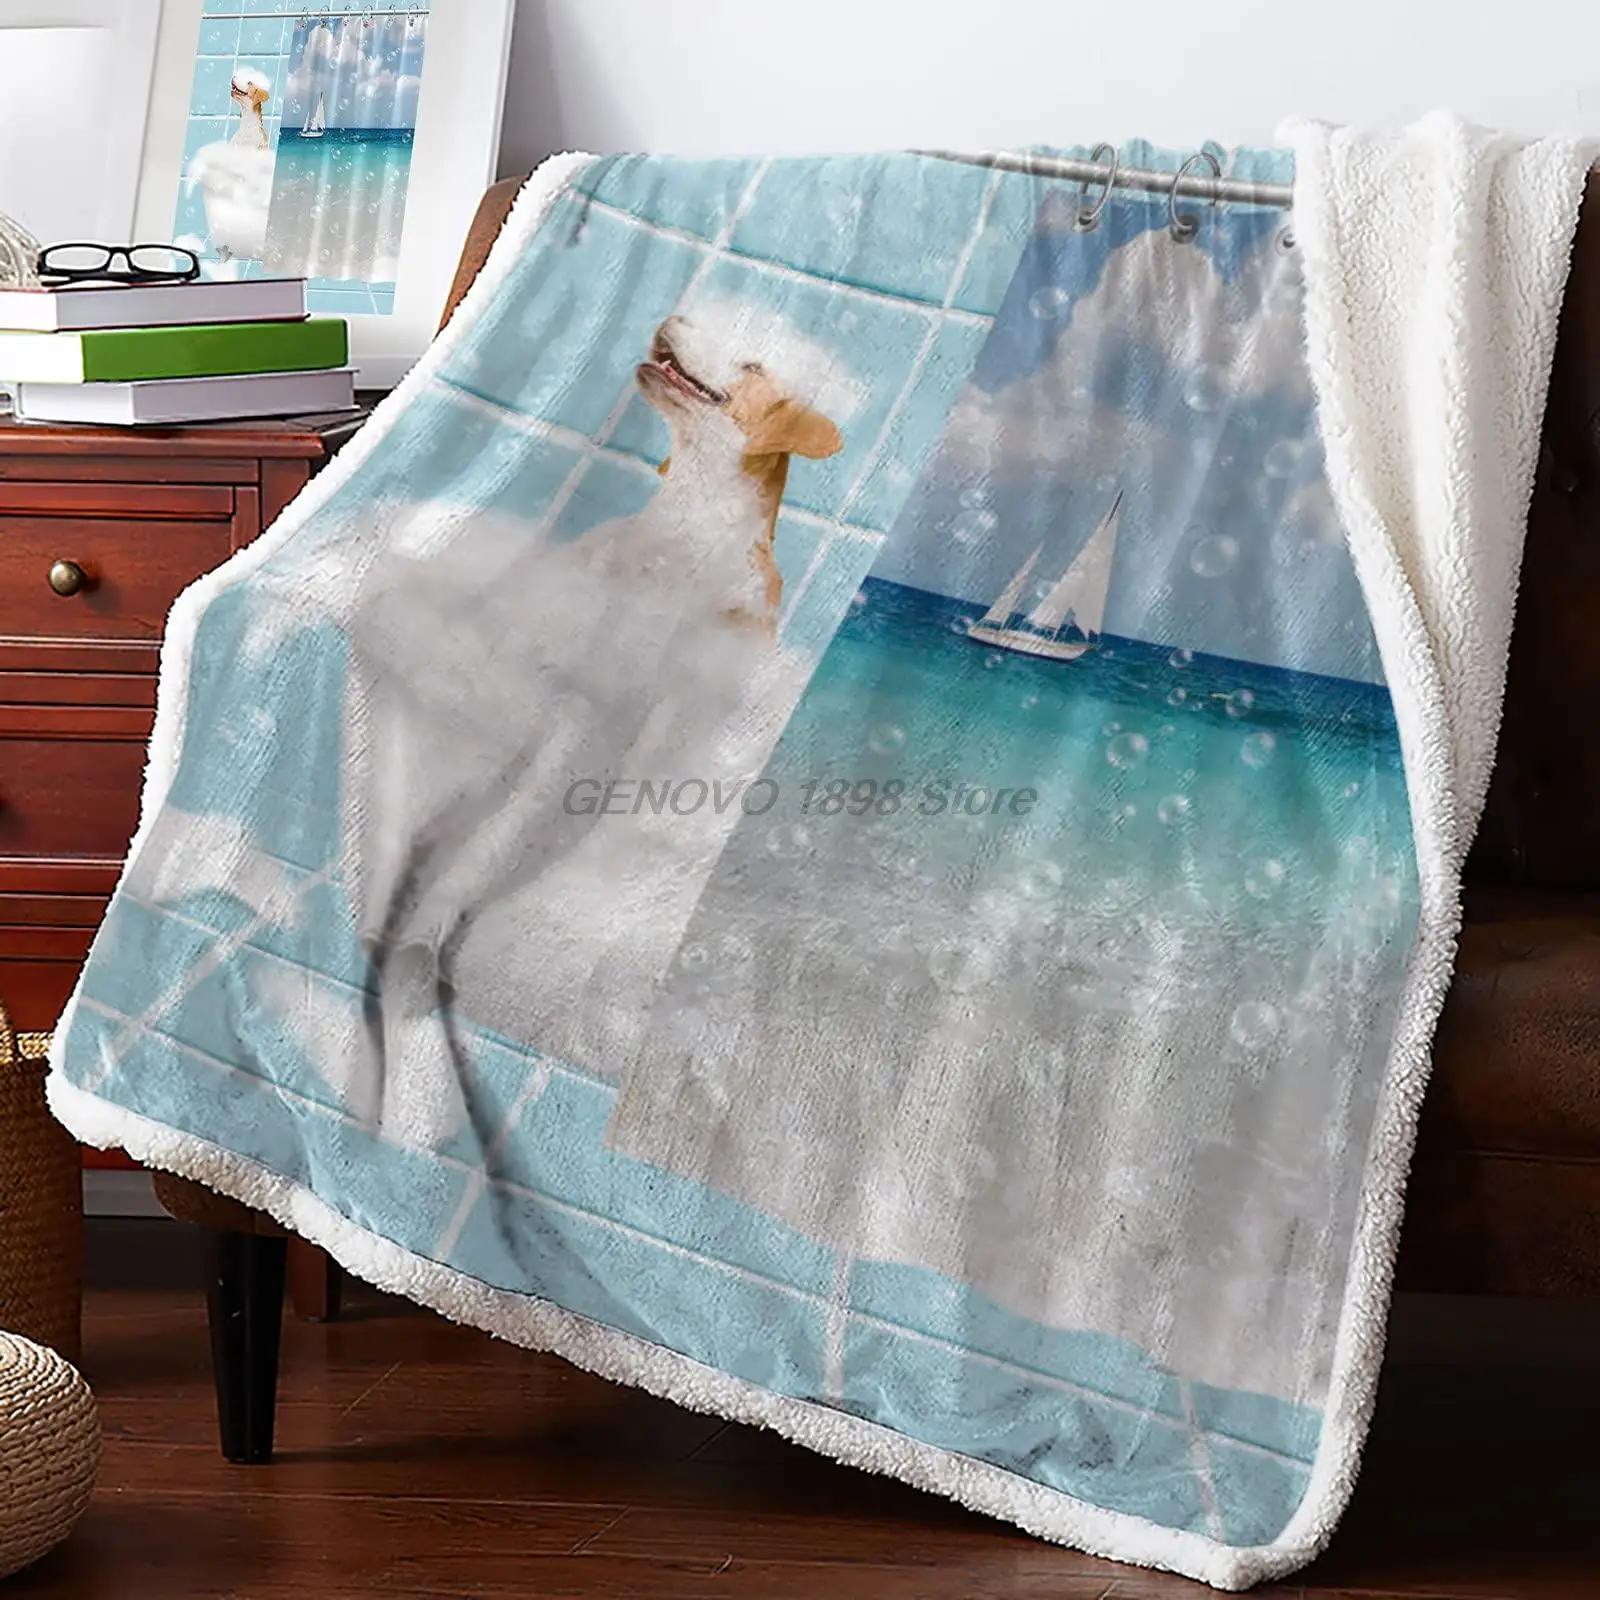 

Флисовое плюшевое одеяло s, пушистое мягкое одеяло, для купания собак и животных в ванной с душевой занавеской, одеяло, всесезонное легкое од...